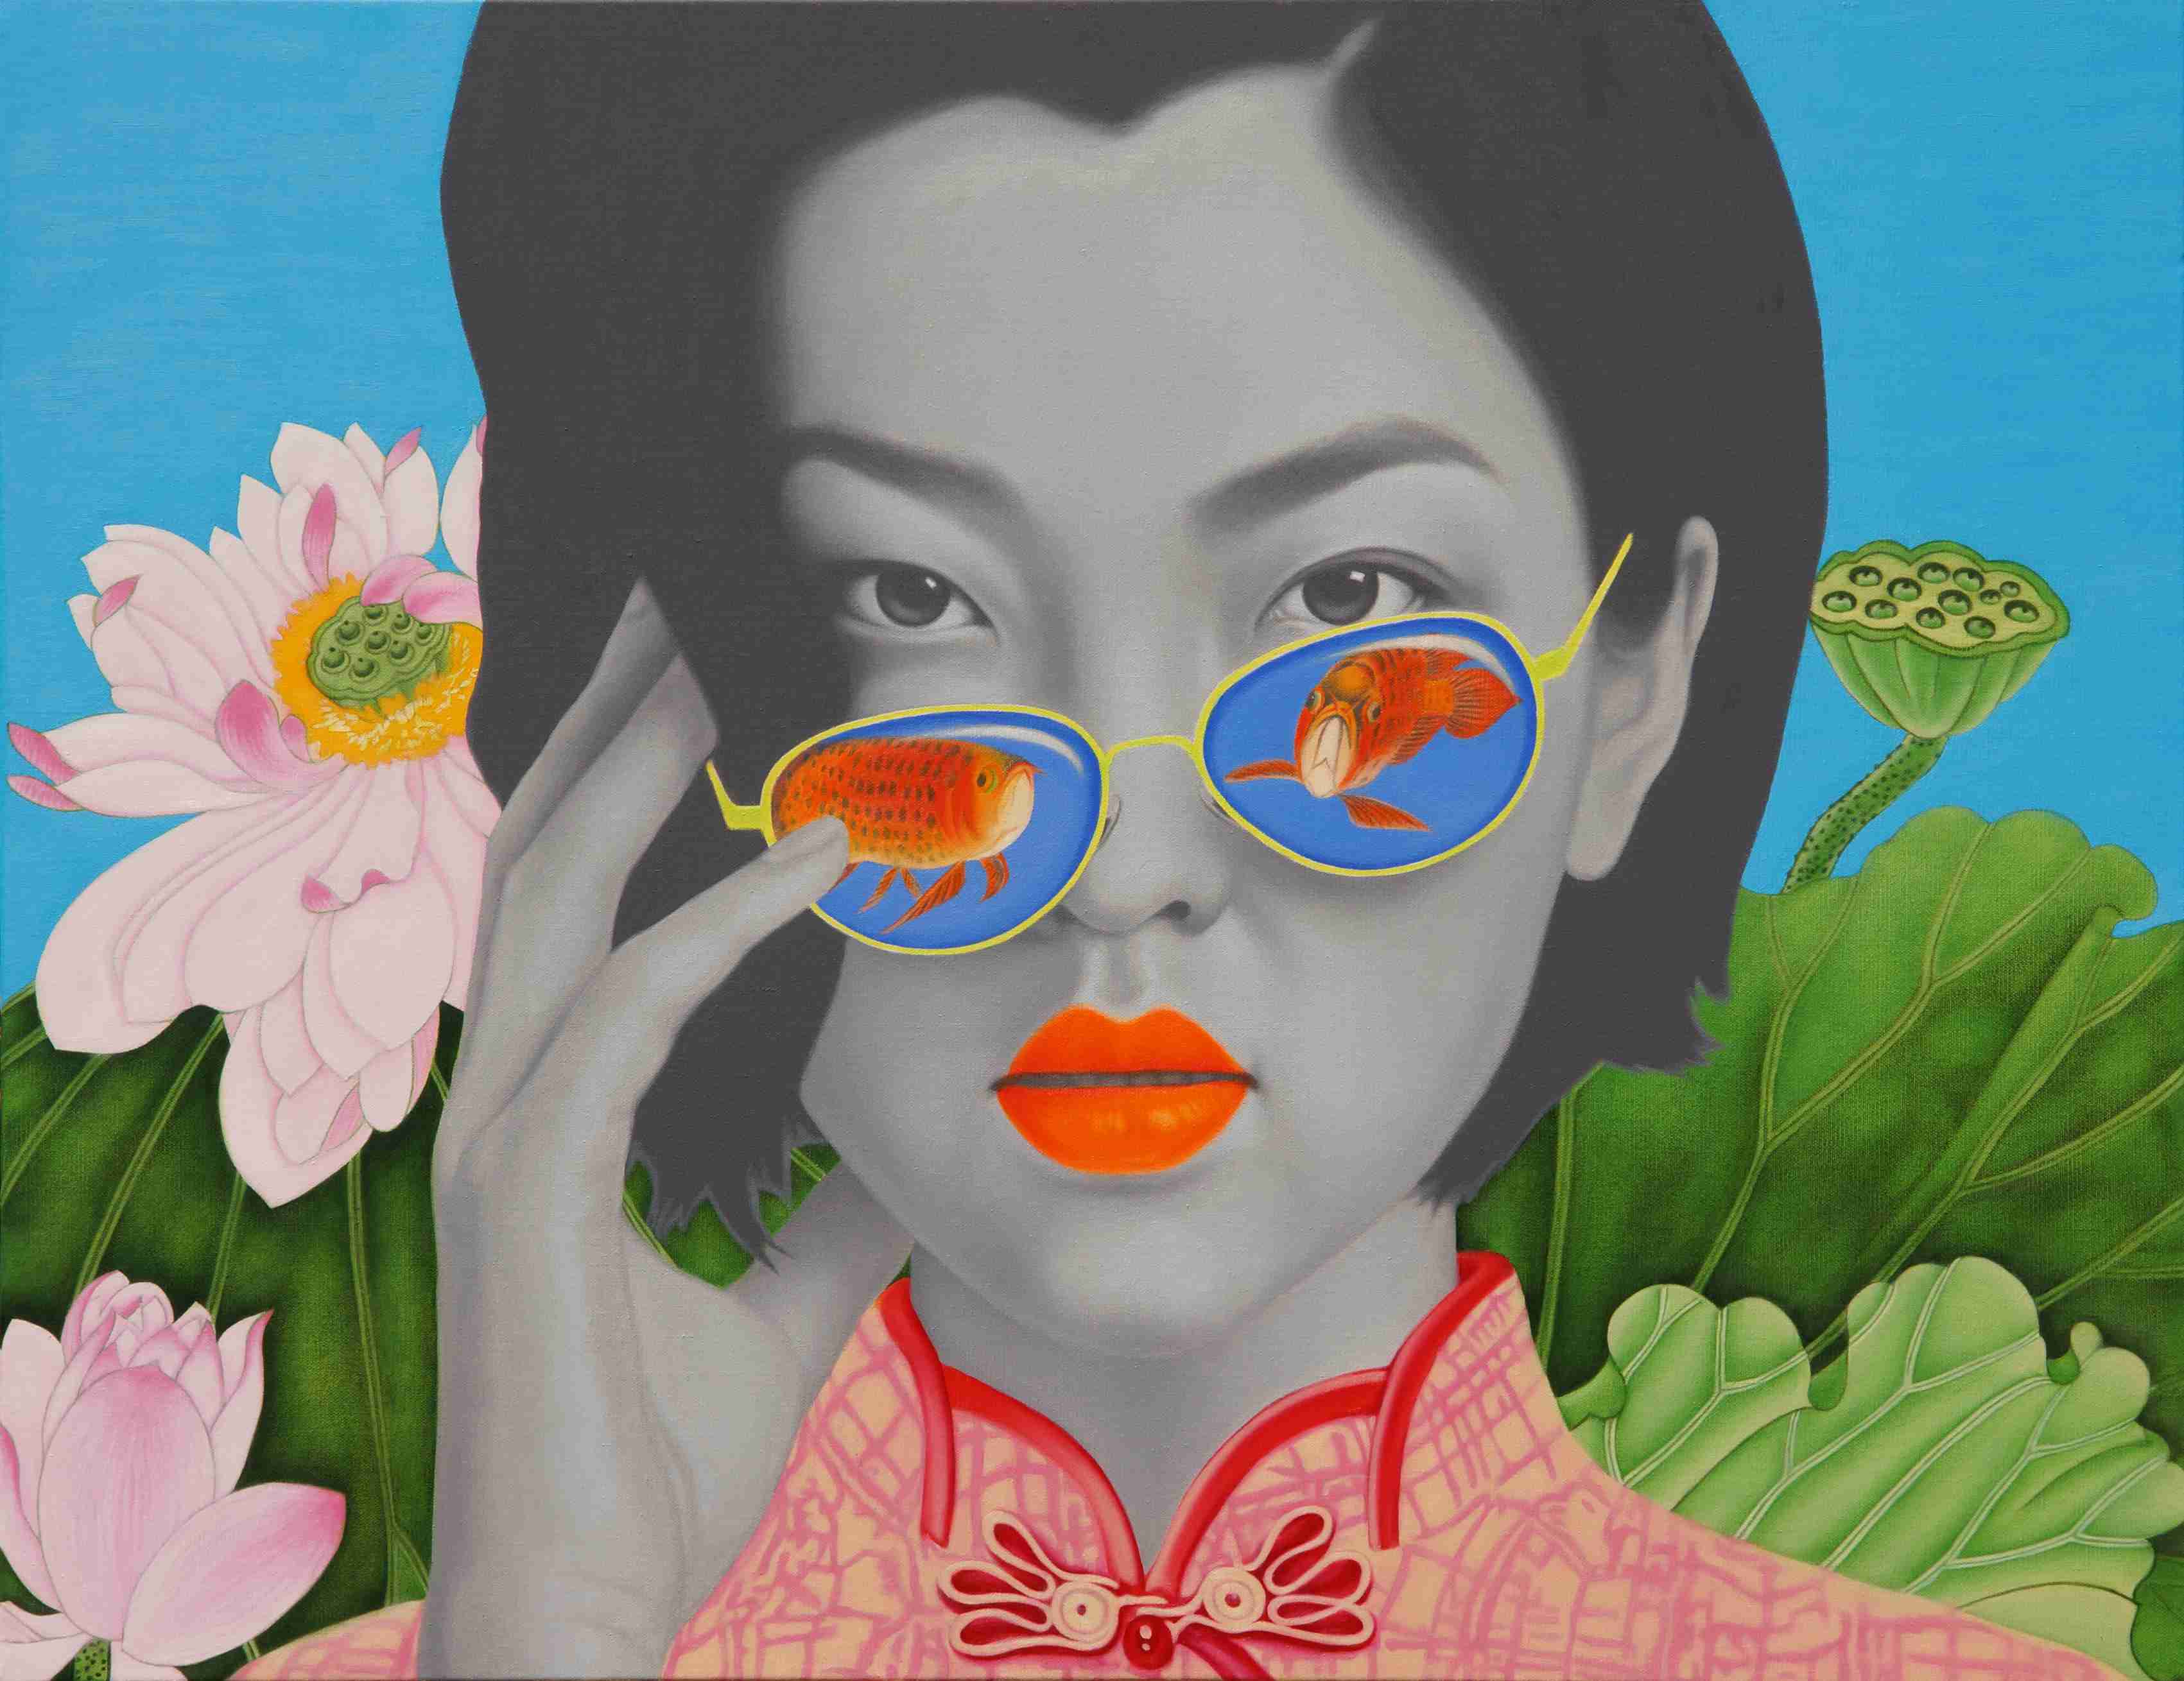 中国女孩 China Girl 100x130cm 布面油画 oil on canvas